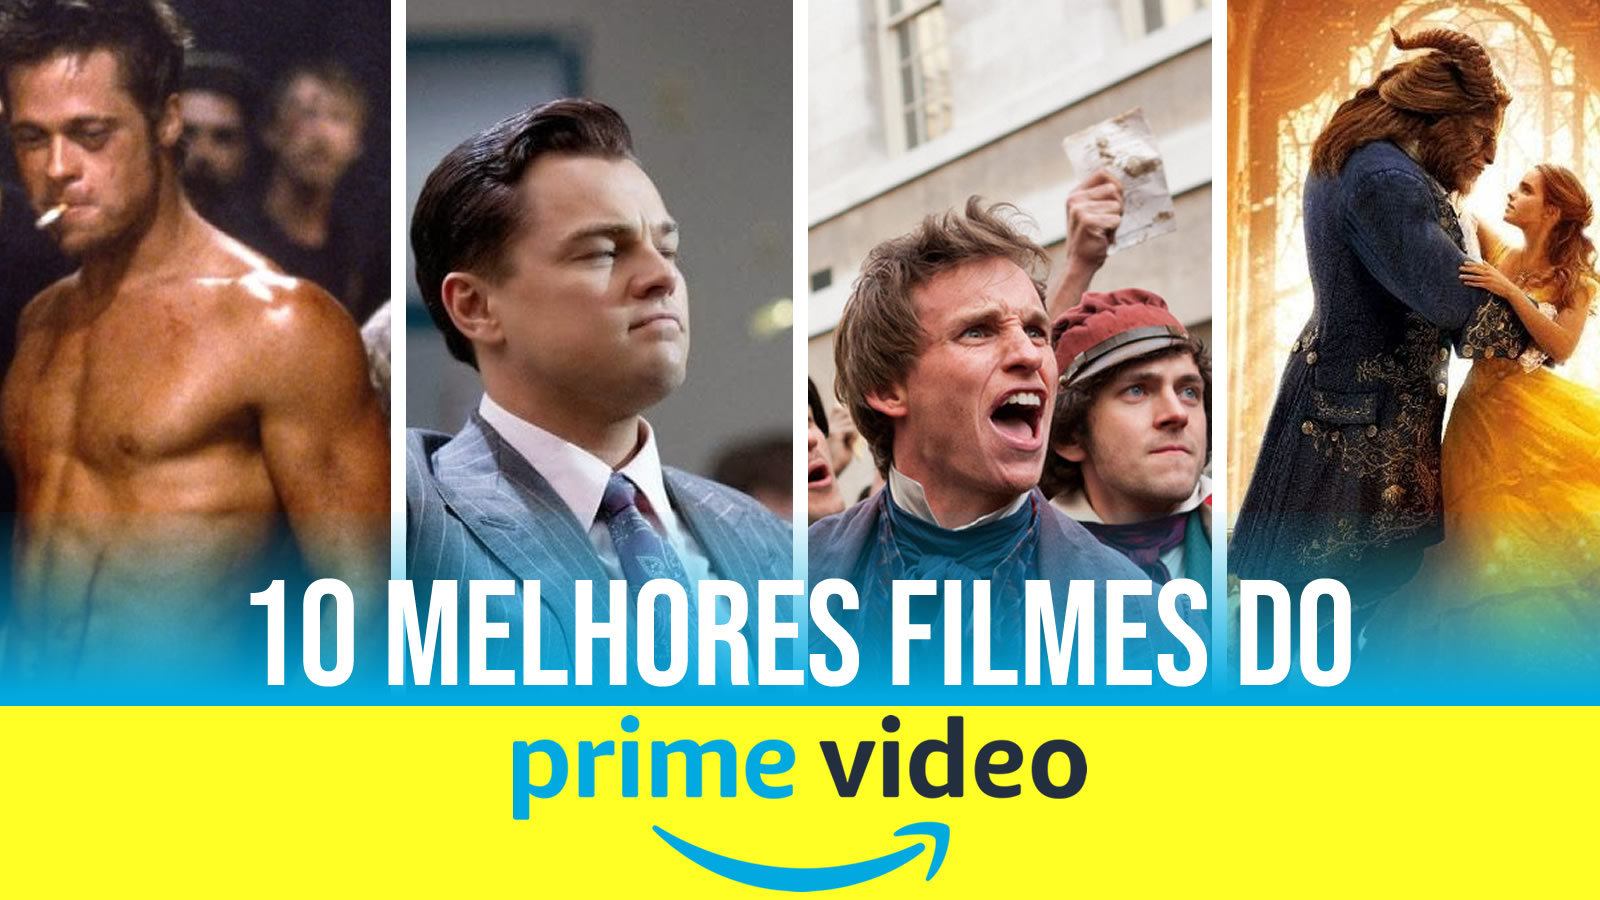 10 Melhores filmes do Amazon Prime Video